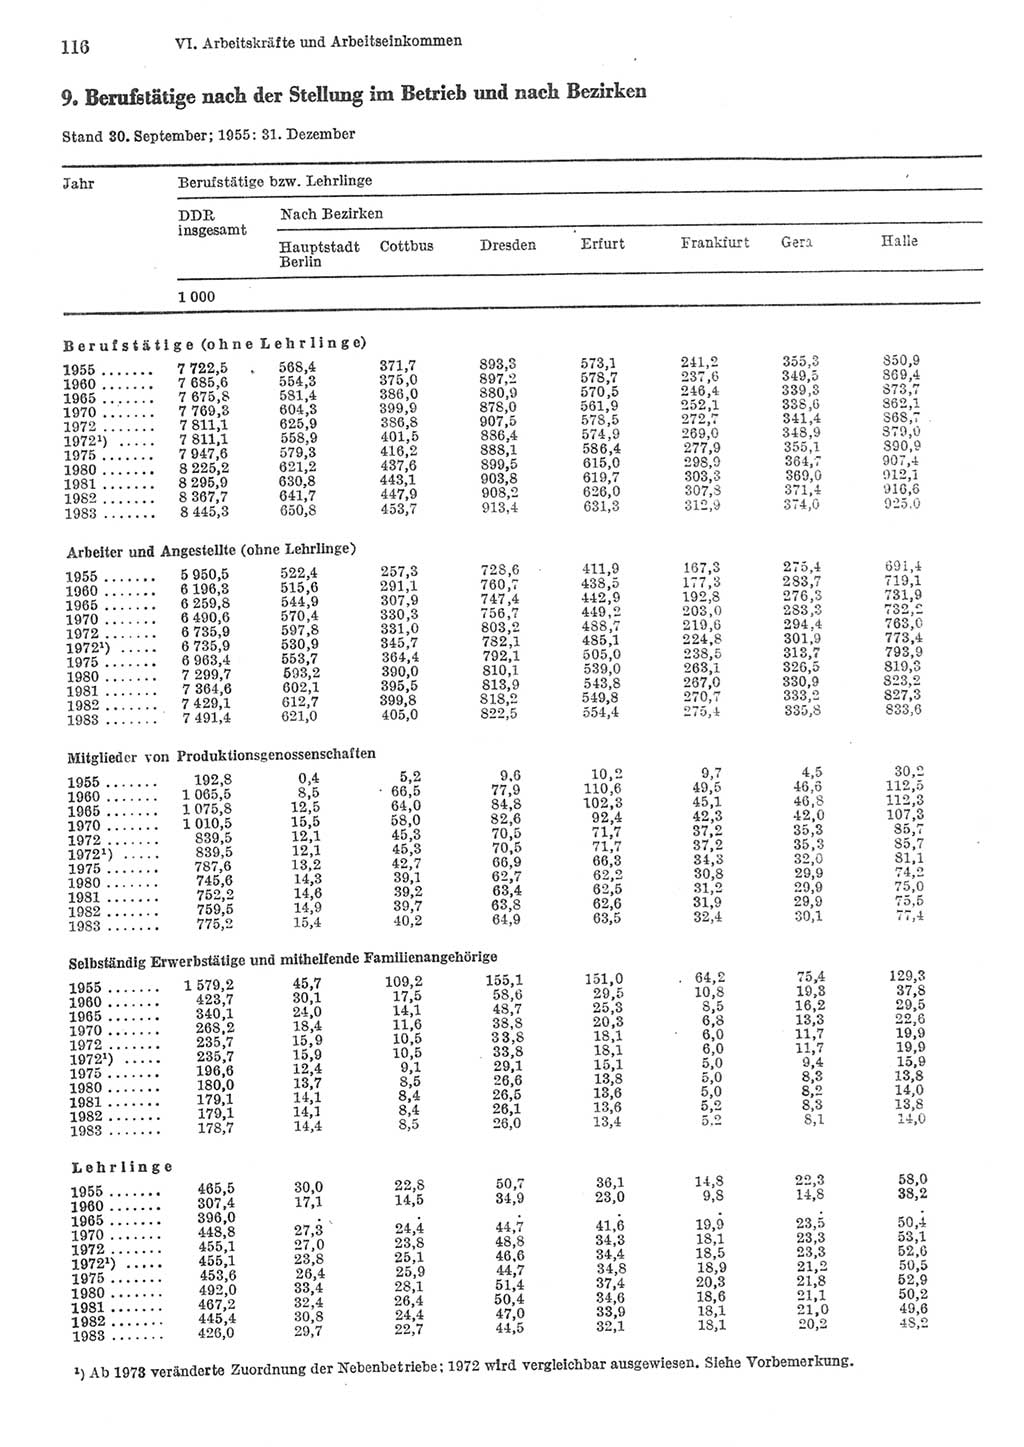 Statistisches Jahrbuch der Deutschen Demokratischen Republik (DDR) 1984, Seite 116 (Stat. Jb. DDR 1984, S. 116)